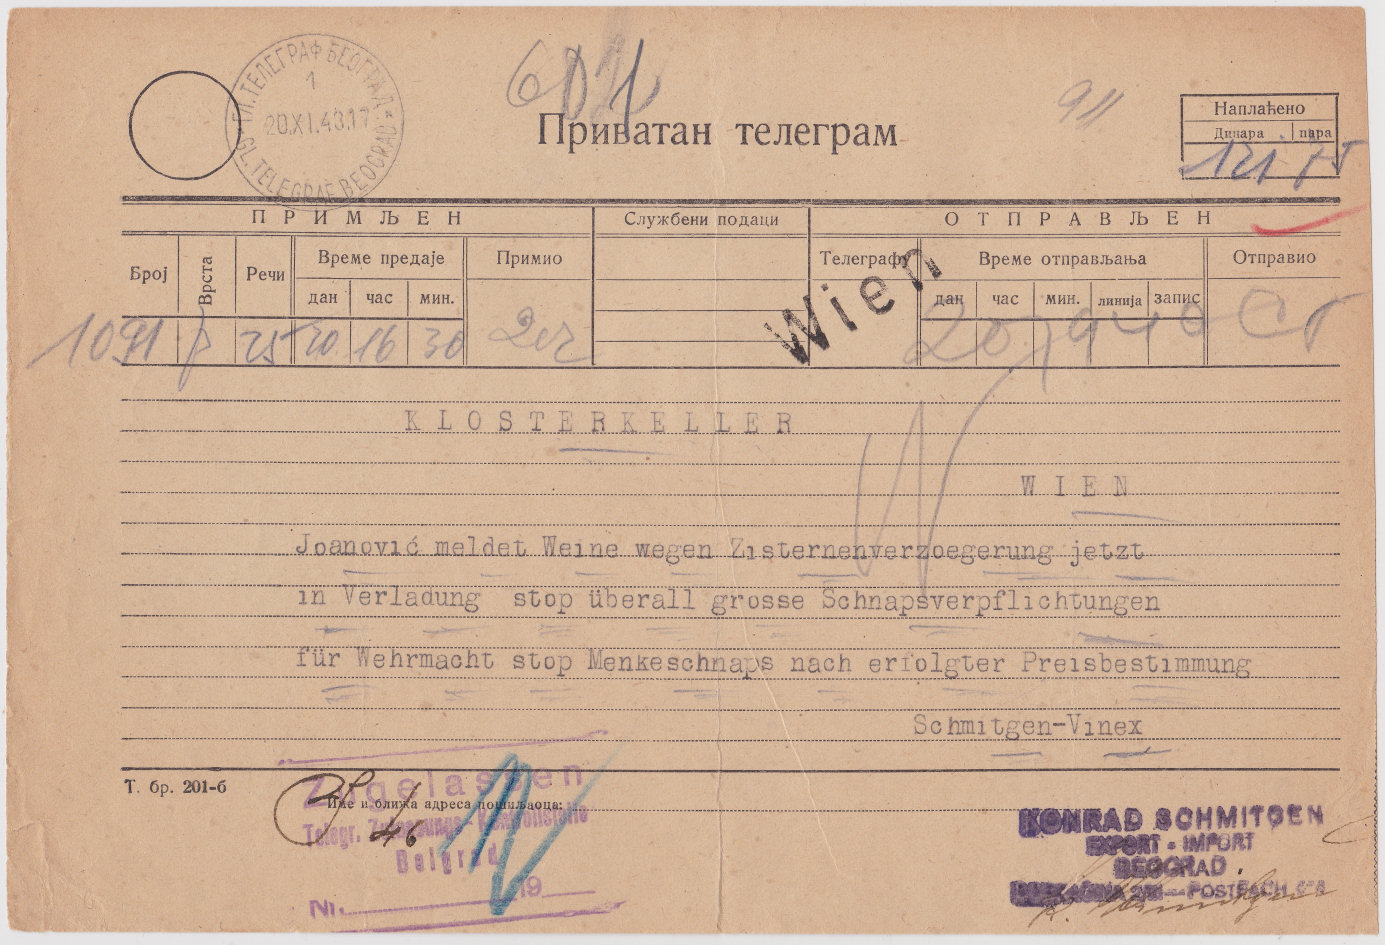 1943 Private telegram.